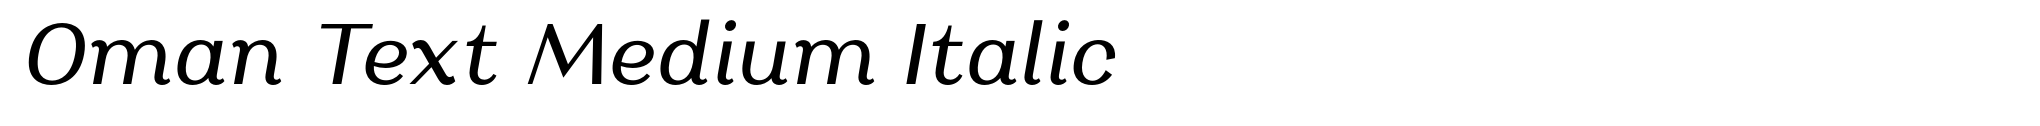 Oman Text Medium Italic image